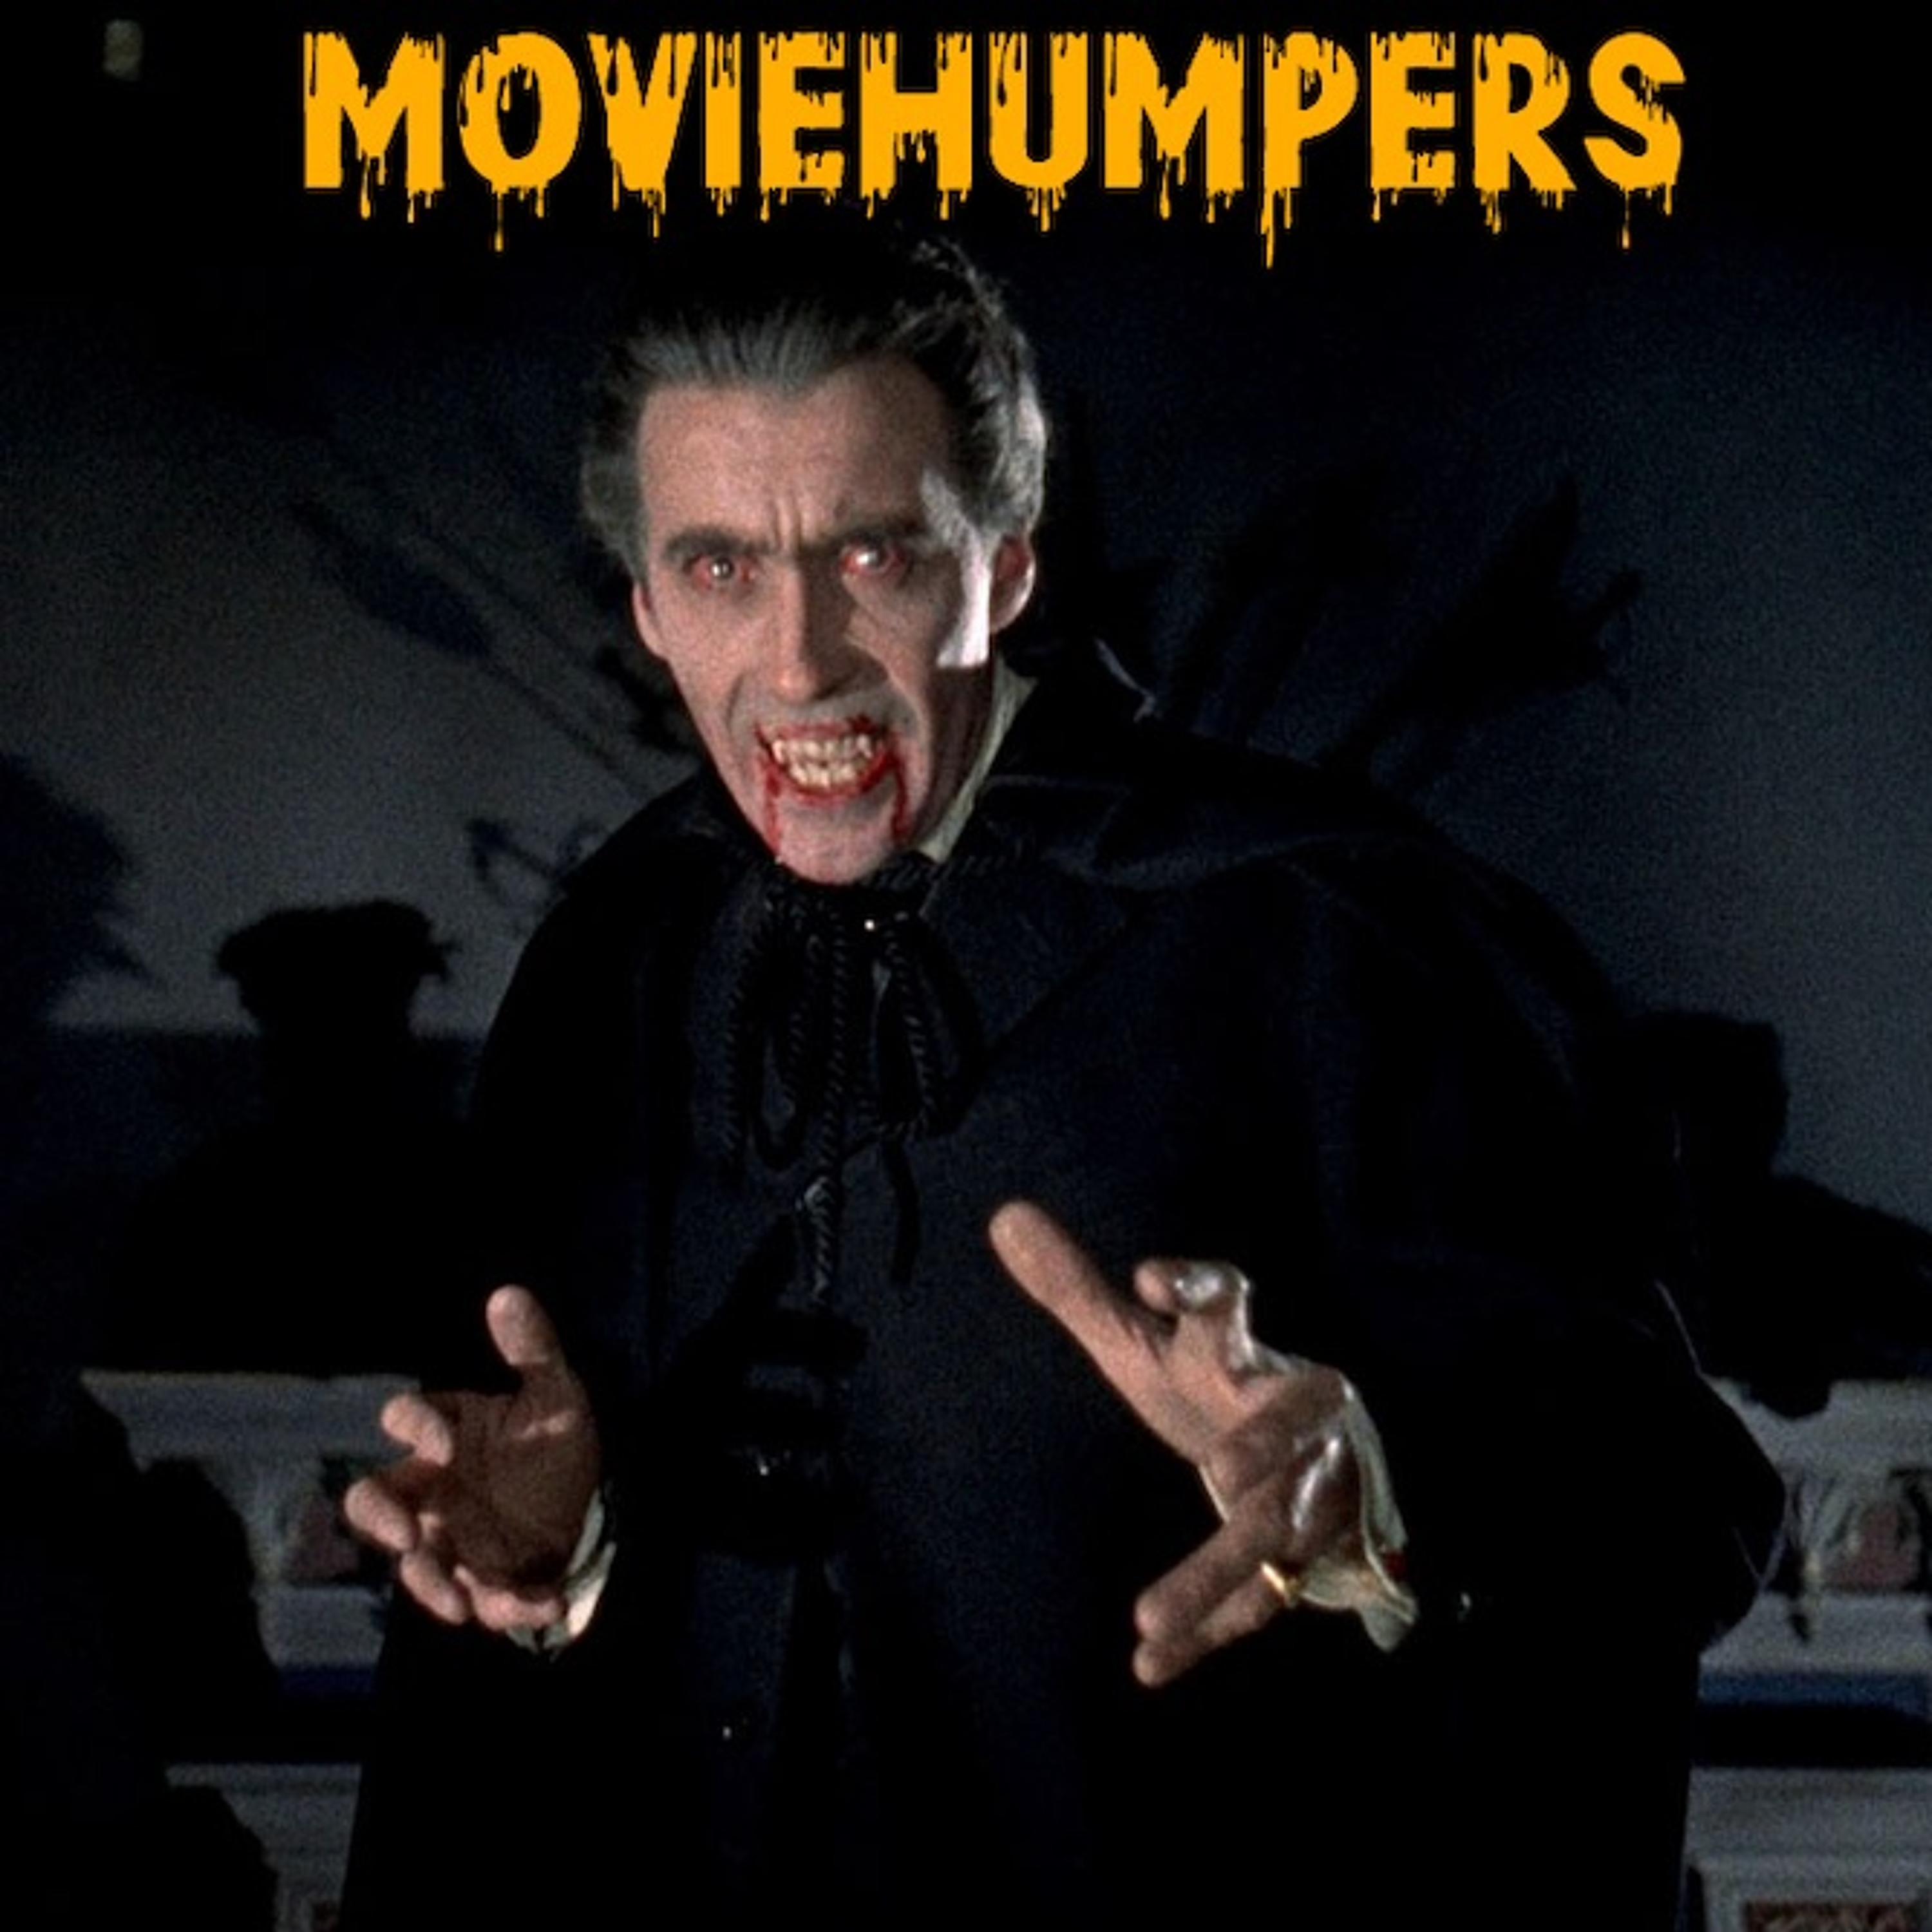 Horror Of Dracula (1958)